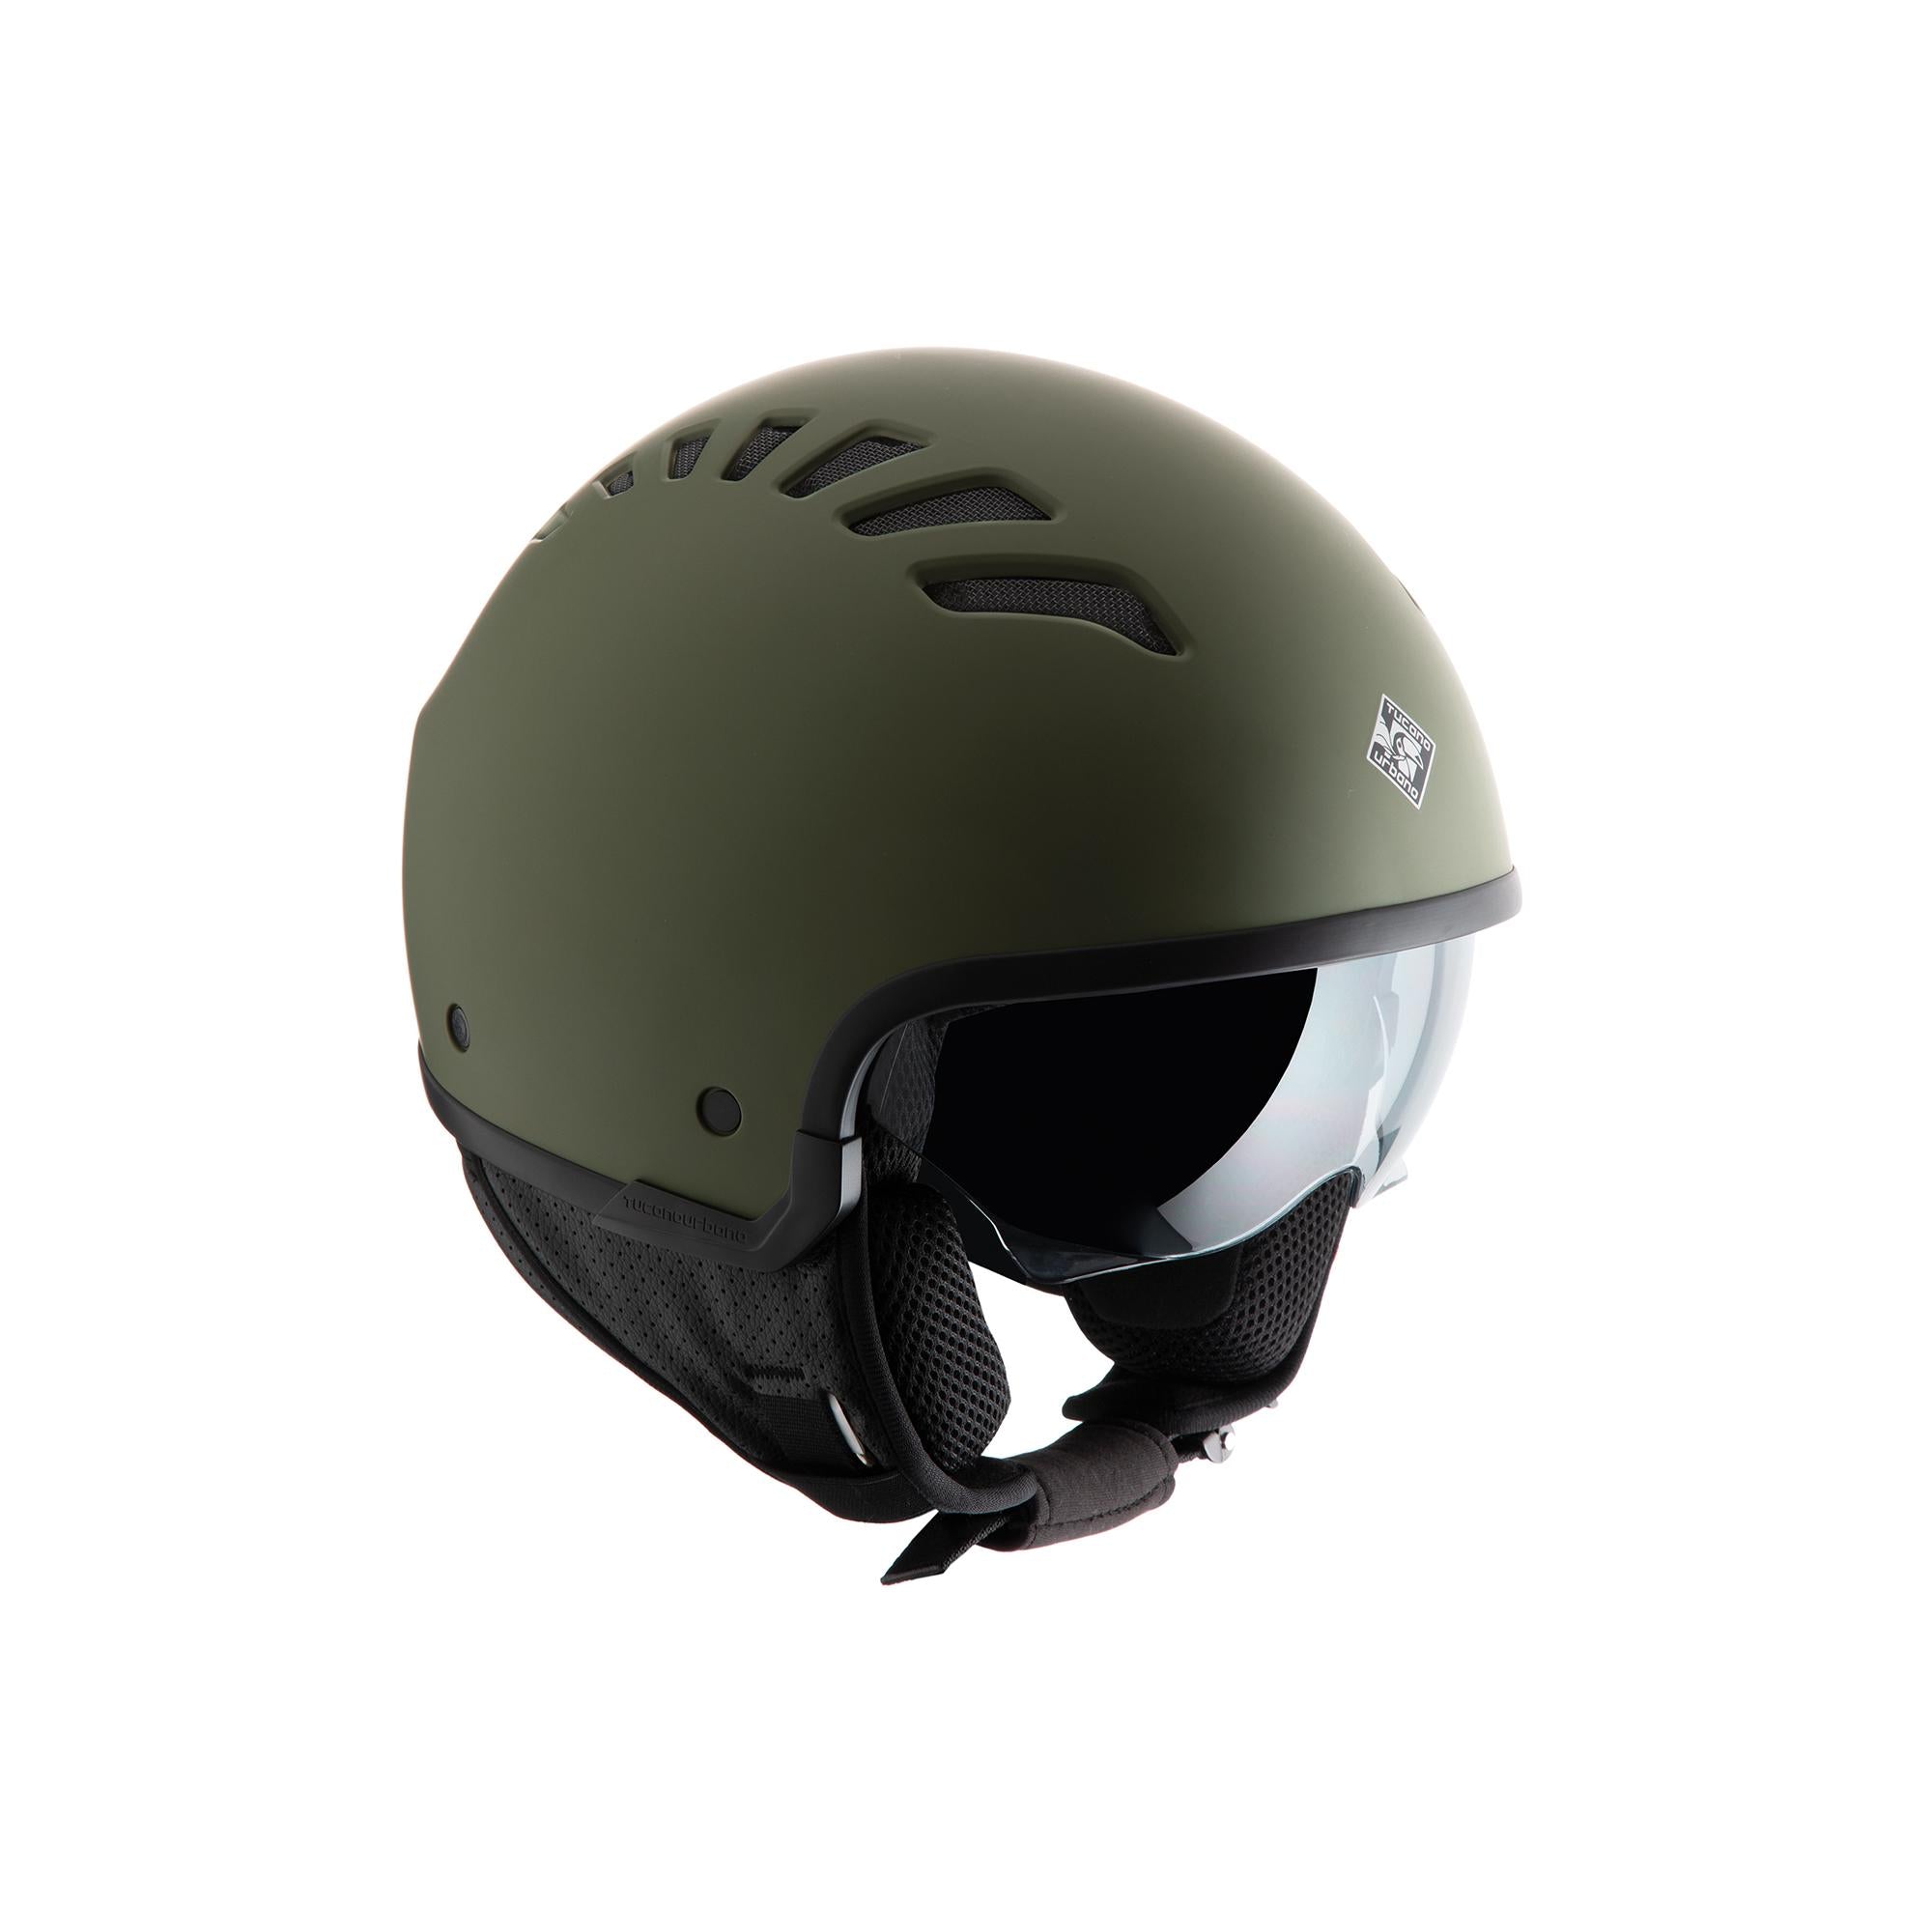 TUCANO URBANO EL'FLESH matt airbone green helmet